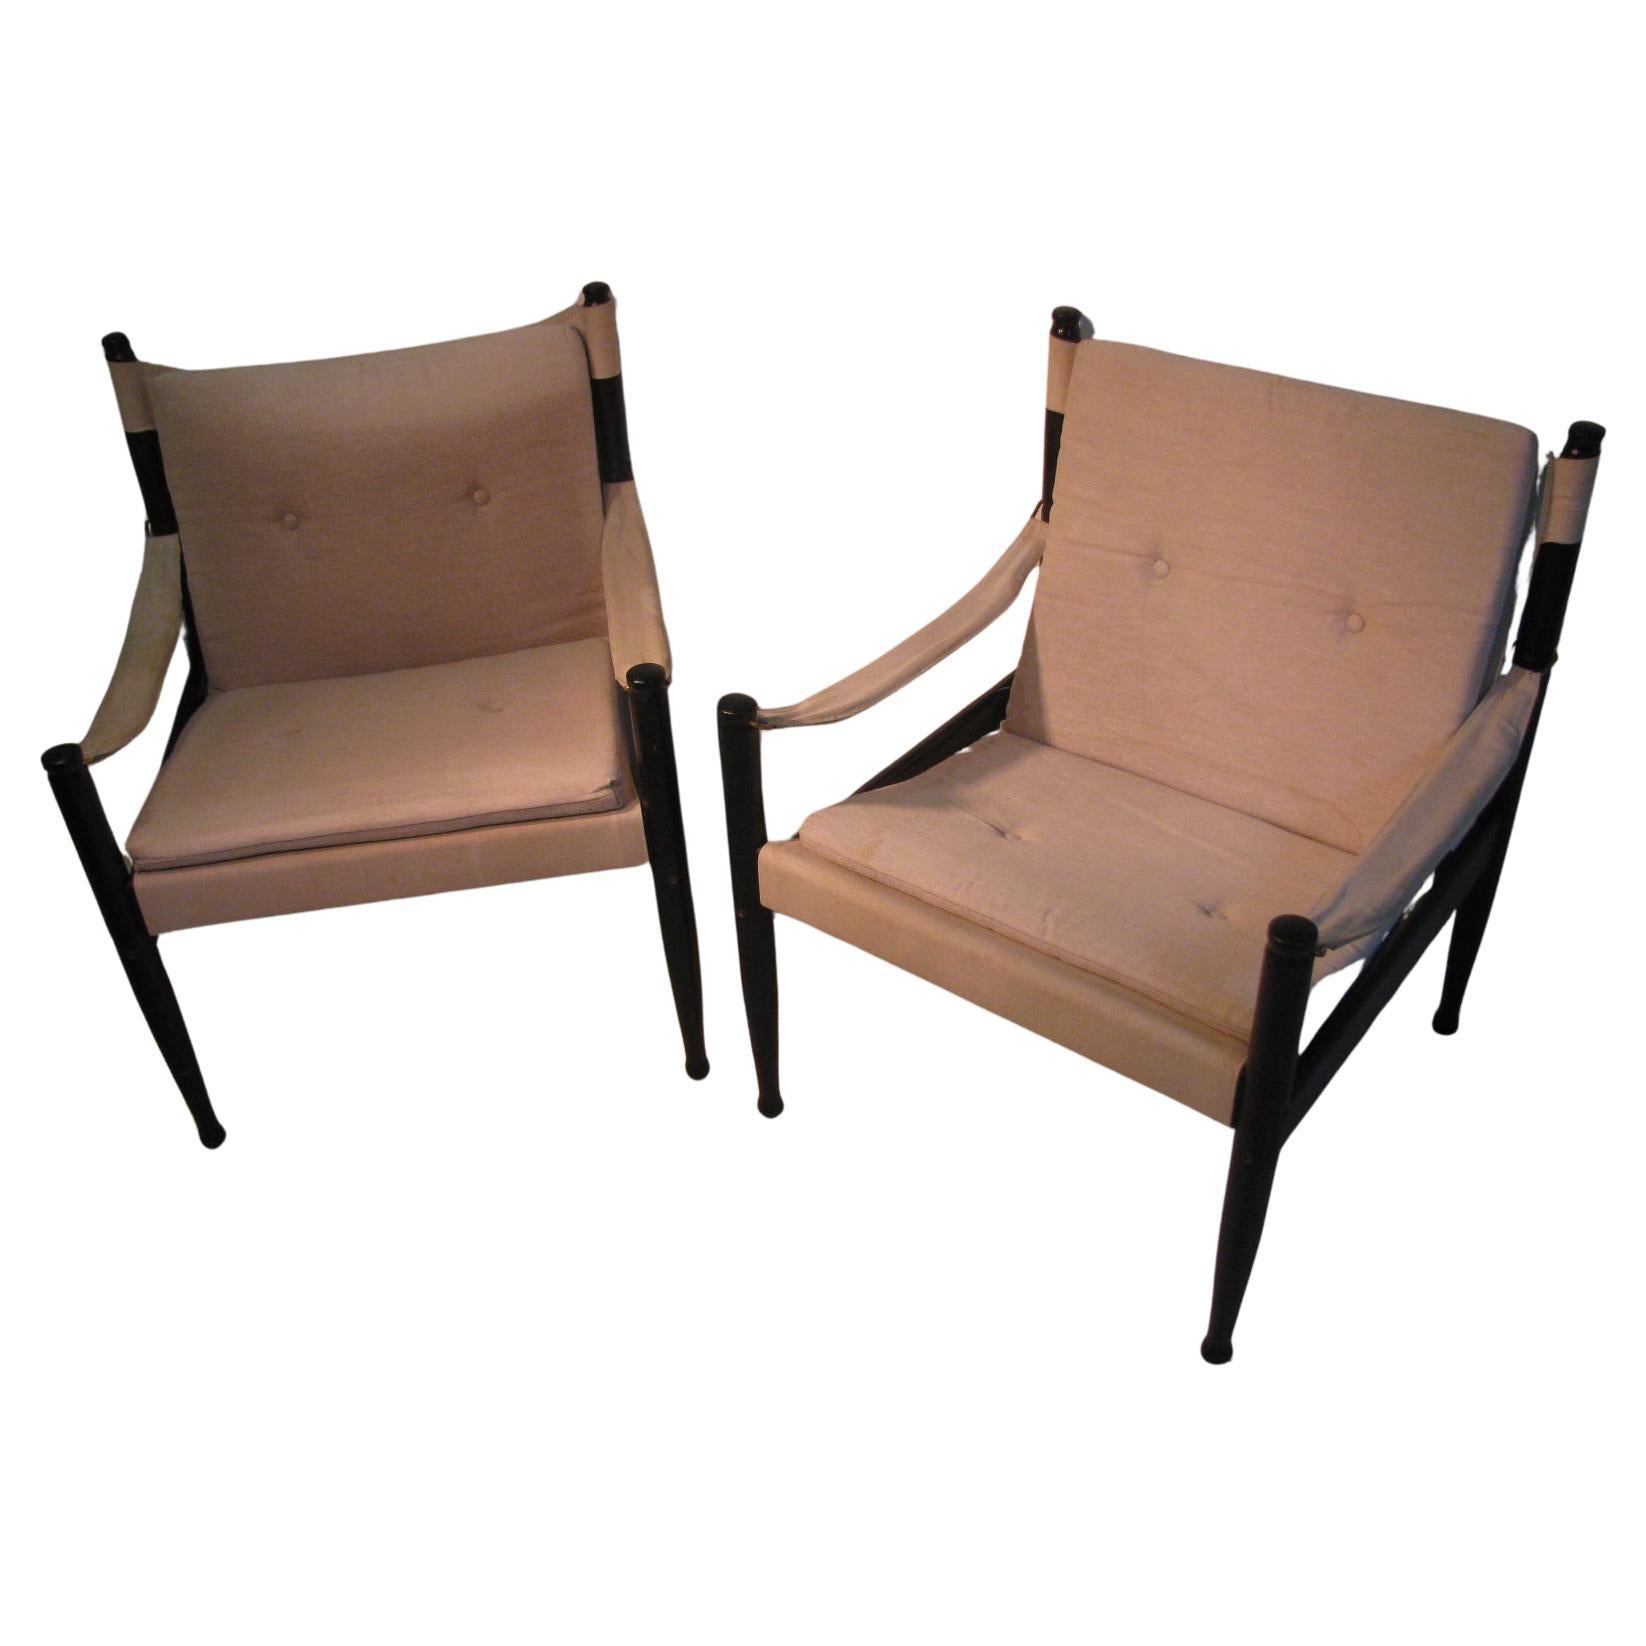 Merveilleuse paire de chaises longues safari par Erik Worts pour Niels Eilersen. Émaillées en noir avec un revêtement en toile, les chaises sont en très bon état avec quelques taches d'eau sur la toile.